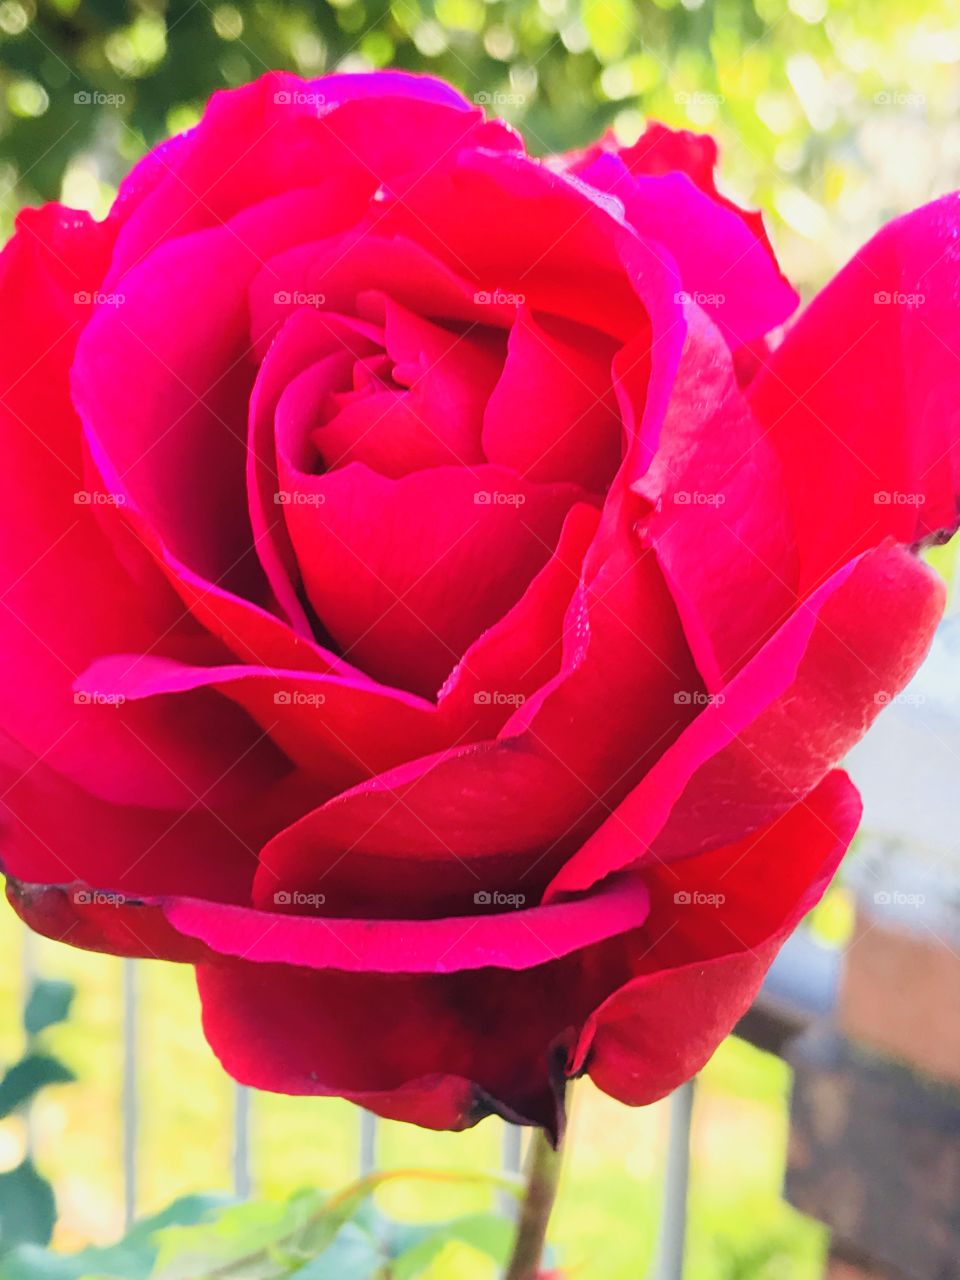 Velvet red rose